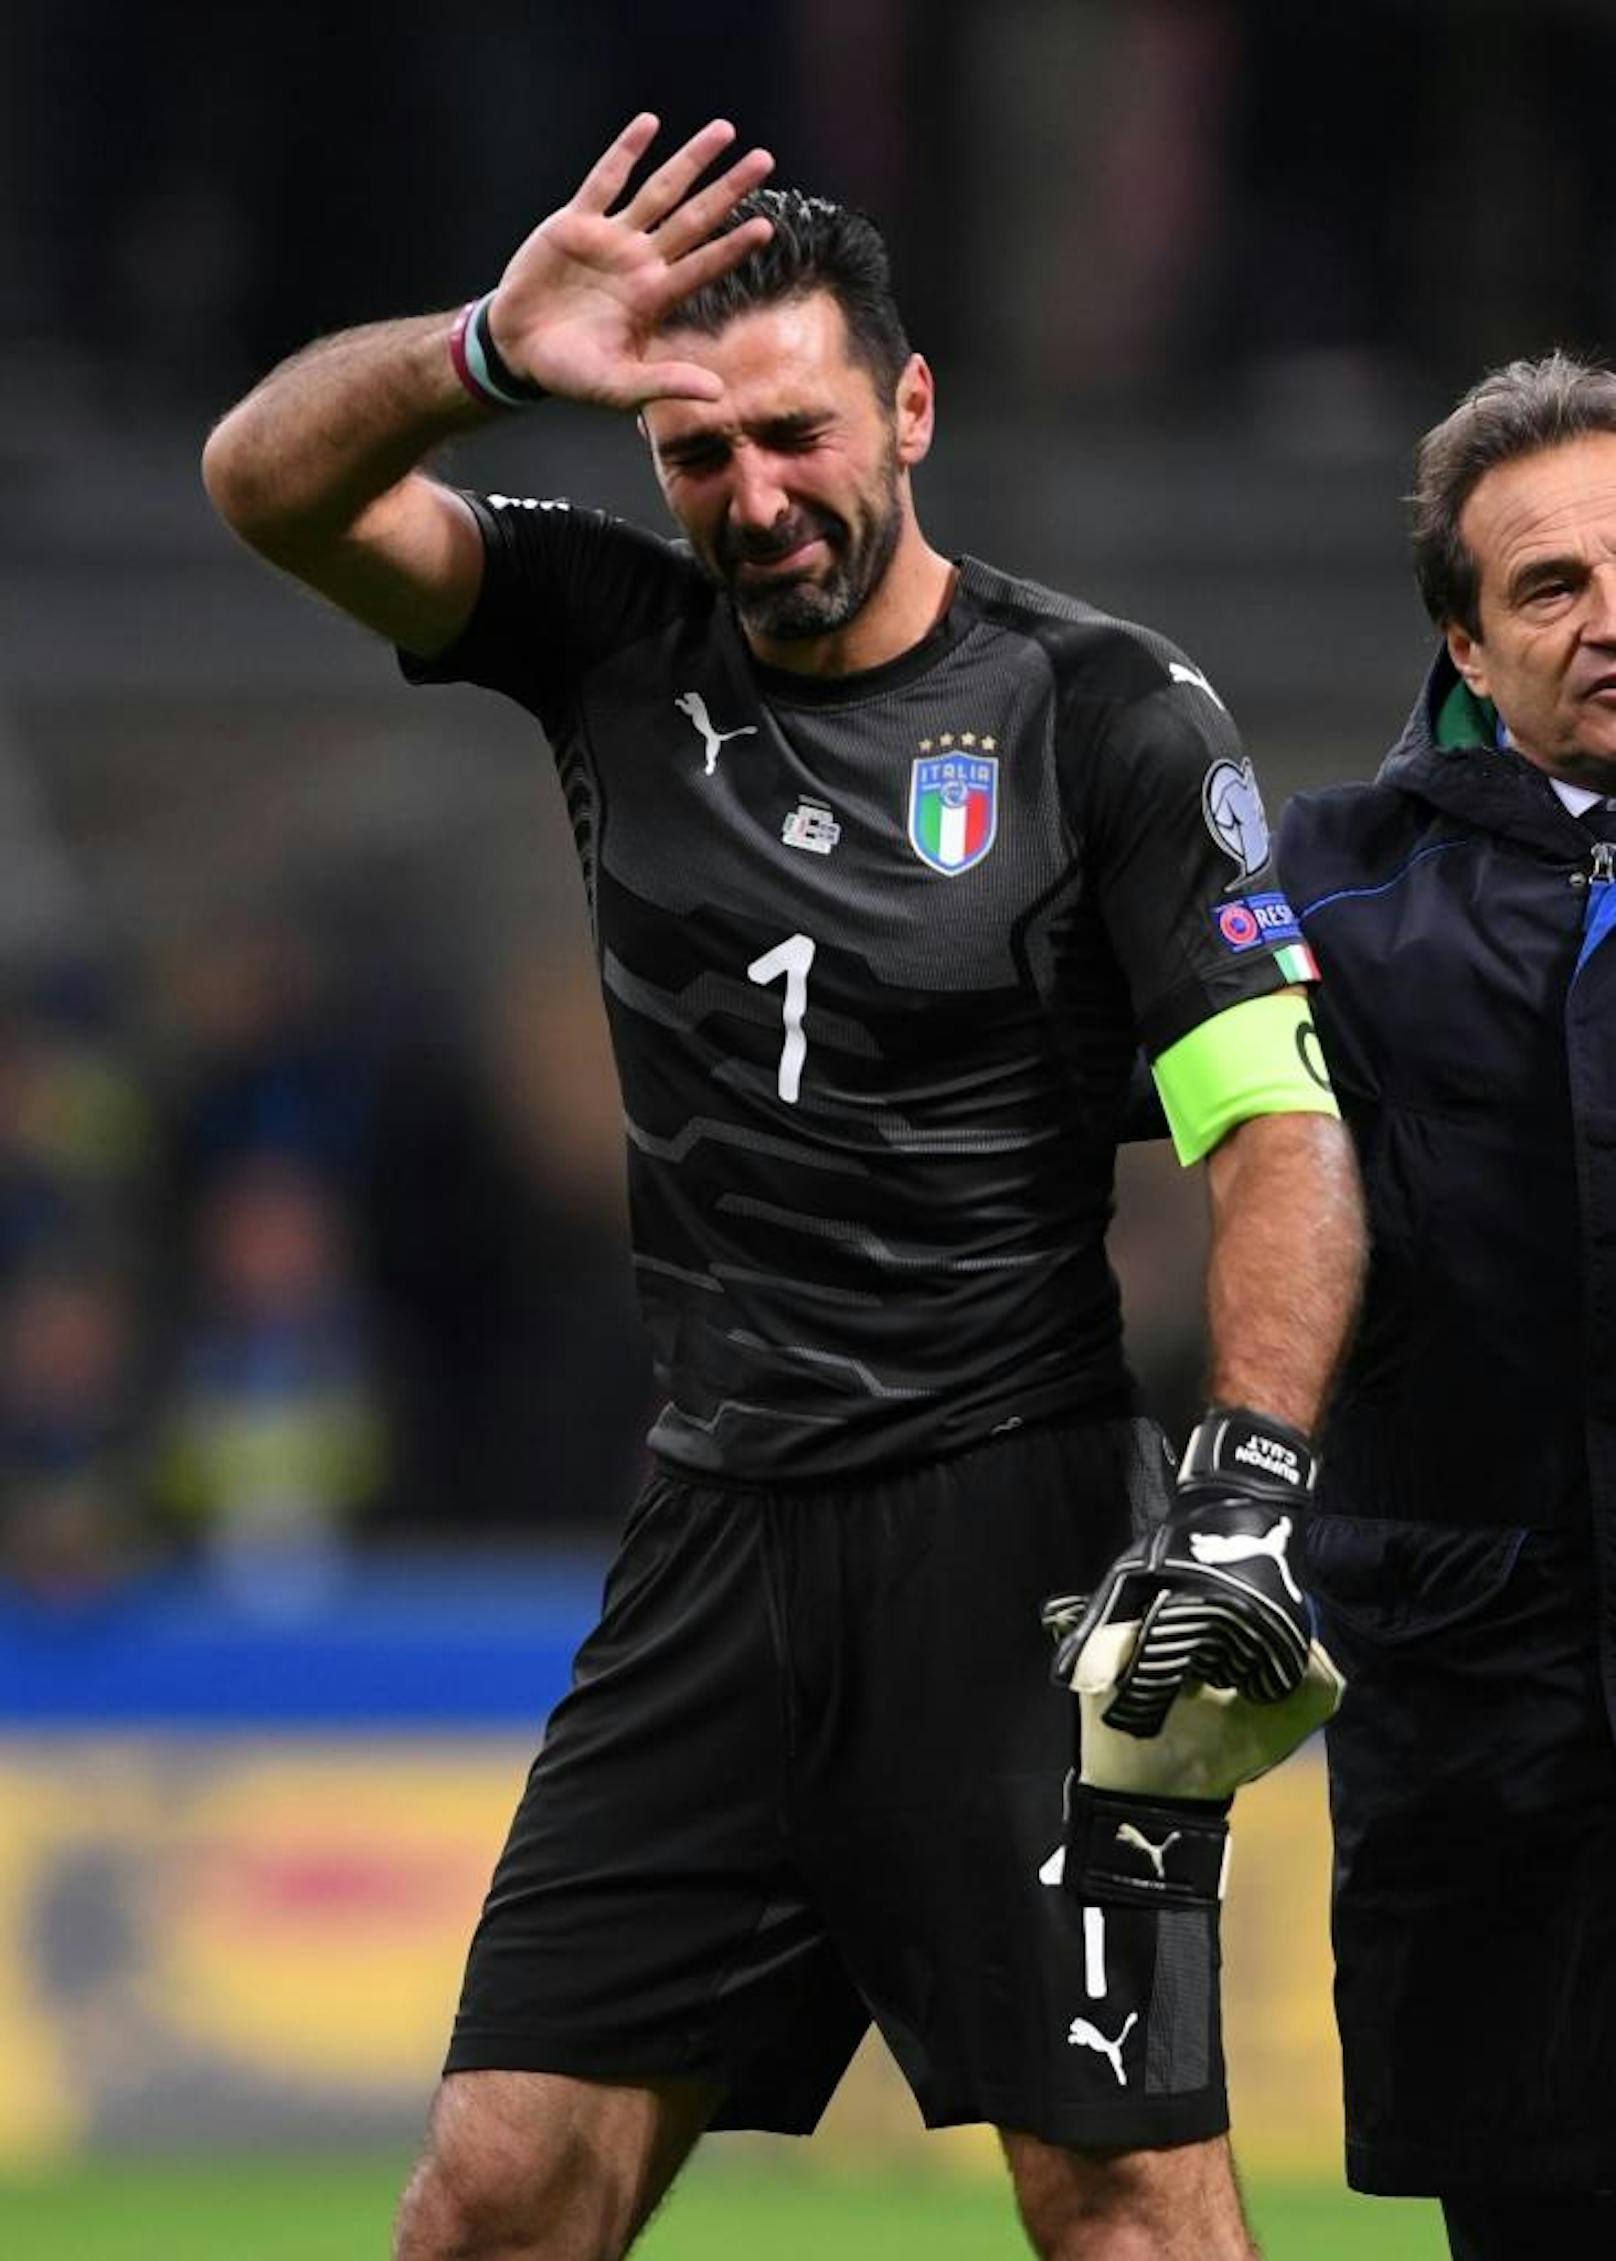 <b>Gianluigi Buffon</b>: Die Torwart-Legende hat sich mit Italien nicht für die WM qualifizieren können und damit keine Chance auf einen zweiten Titel nach 2006. In der Quali-Gruppenphase belegte die "Squadra Azzurra" den zweiten Platz, scheiterte in den Play-offs aber an den Schweden.